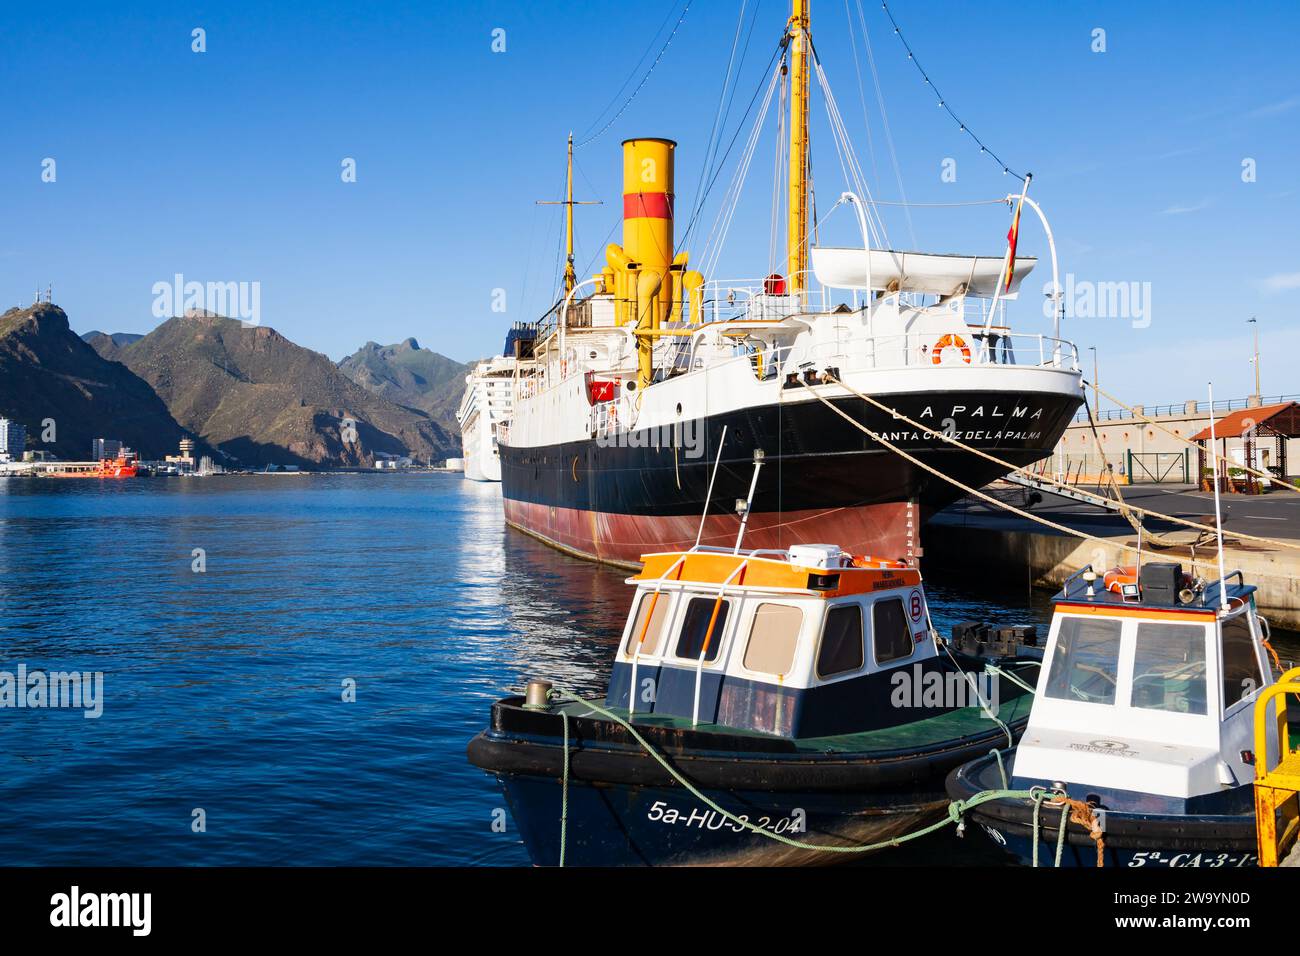 Traditionelle kleine Fischerboote vor dem klassischen Dampfpostschiff La Palma, die am Kreuzfahrtterminal, dem Hafen von Santa Cruz d, restauriert werden Stockfoto